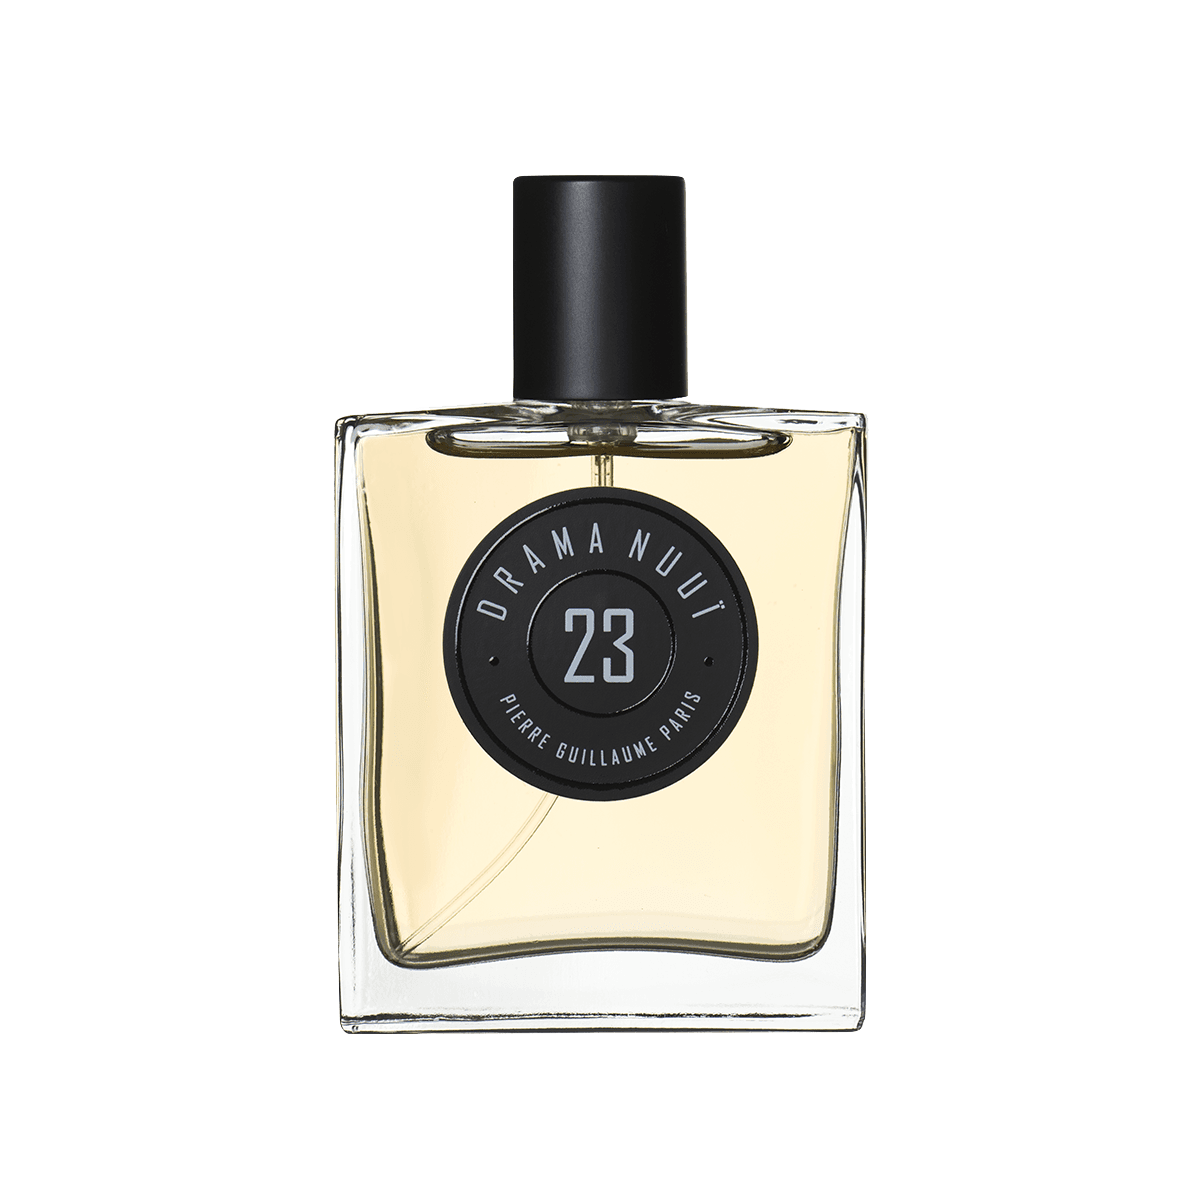 Pierre Guillaume Paris - 23 Drama Nuuie eau de parfum 50 ml | Perfume Lounge